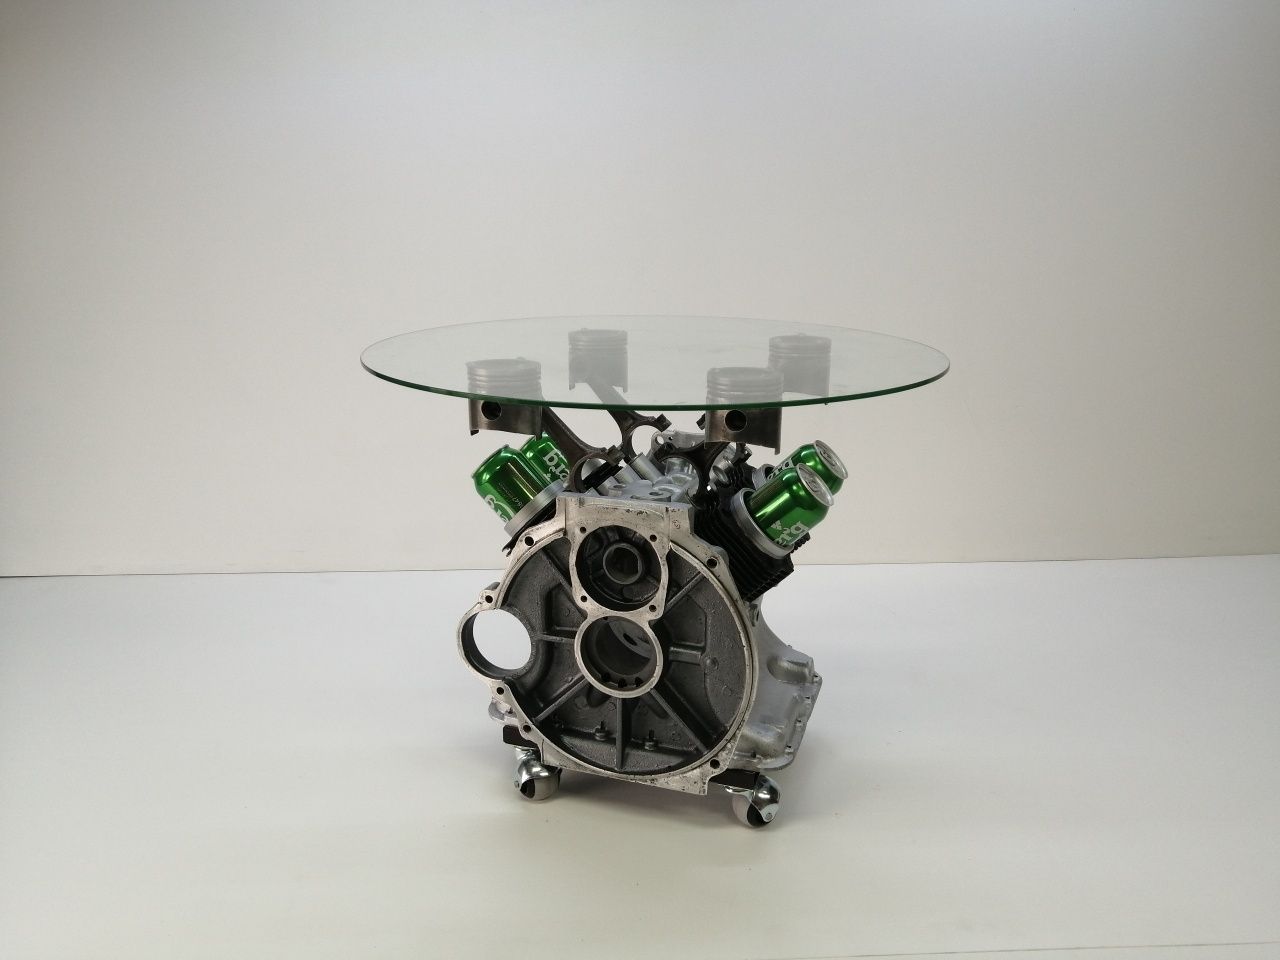 Эксклюзивный столик блока V - образного двигателя, журнальный стол.